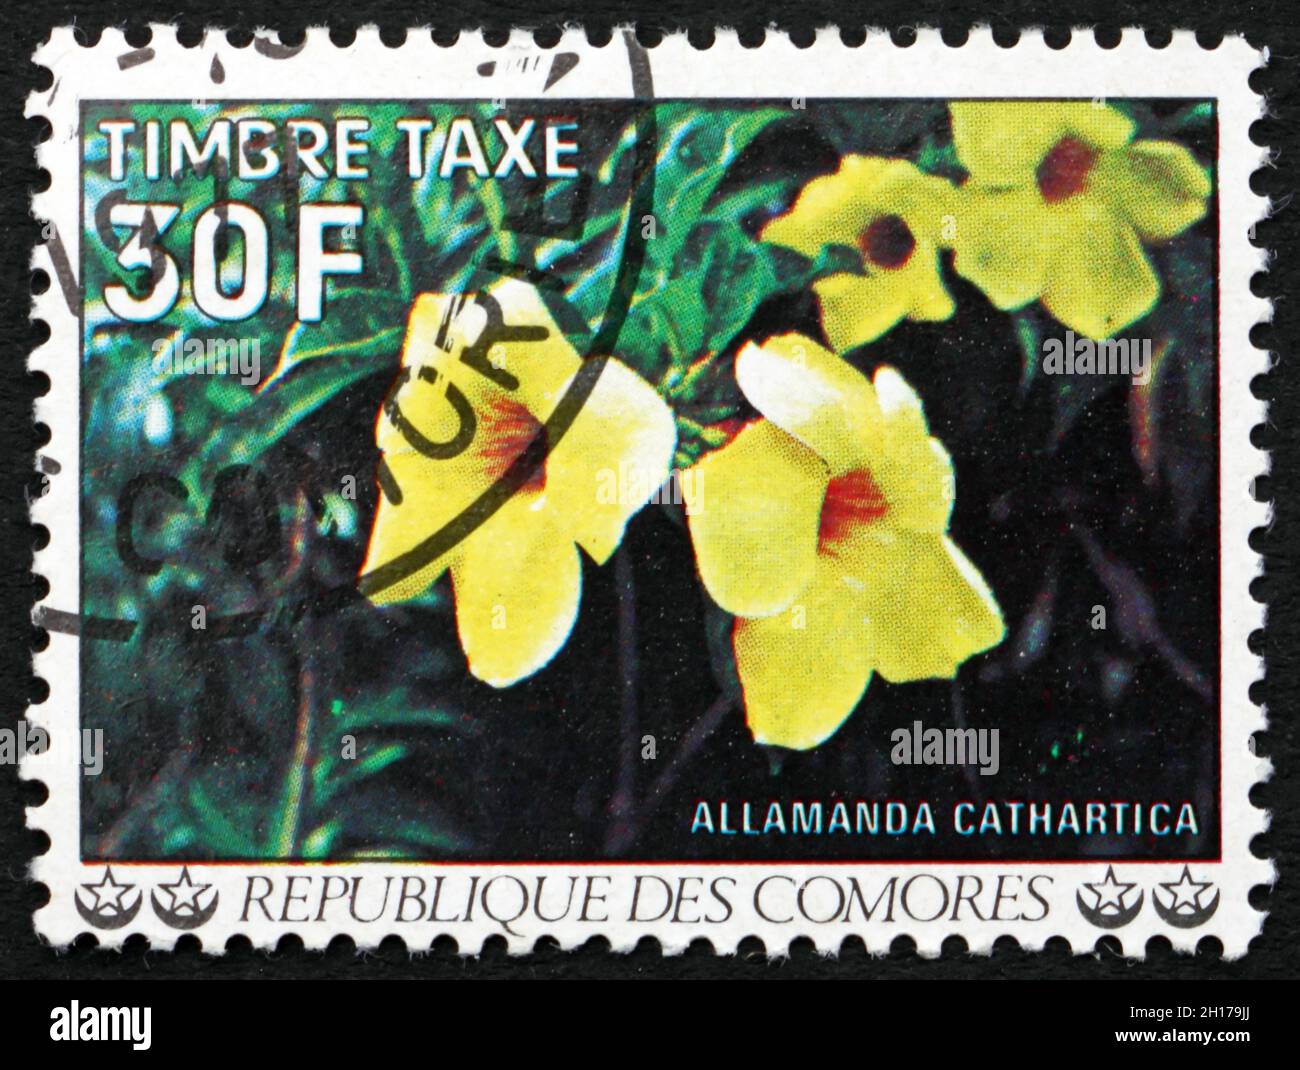 COMOROS - CIRCA 1977: a stamp printed in Comoros shows Golden trumpet, allamanda cathartica, flowering plant, circa 1977 Stock Photo